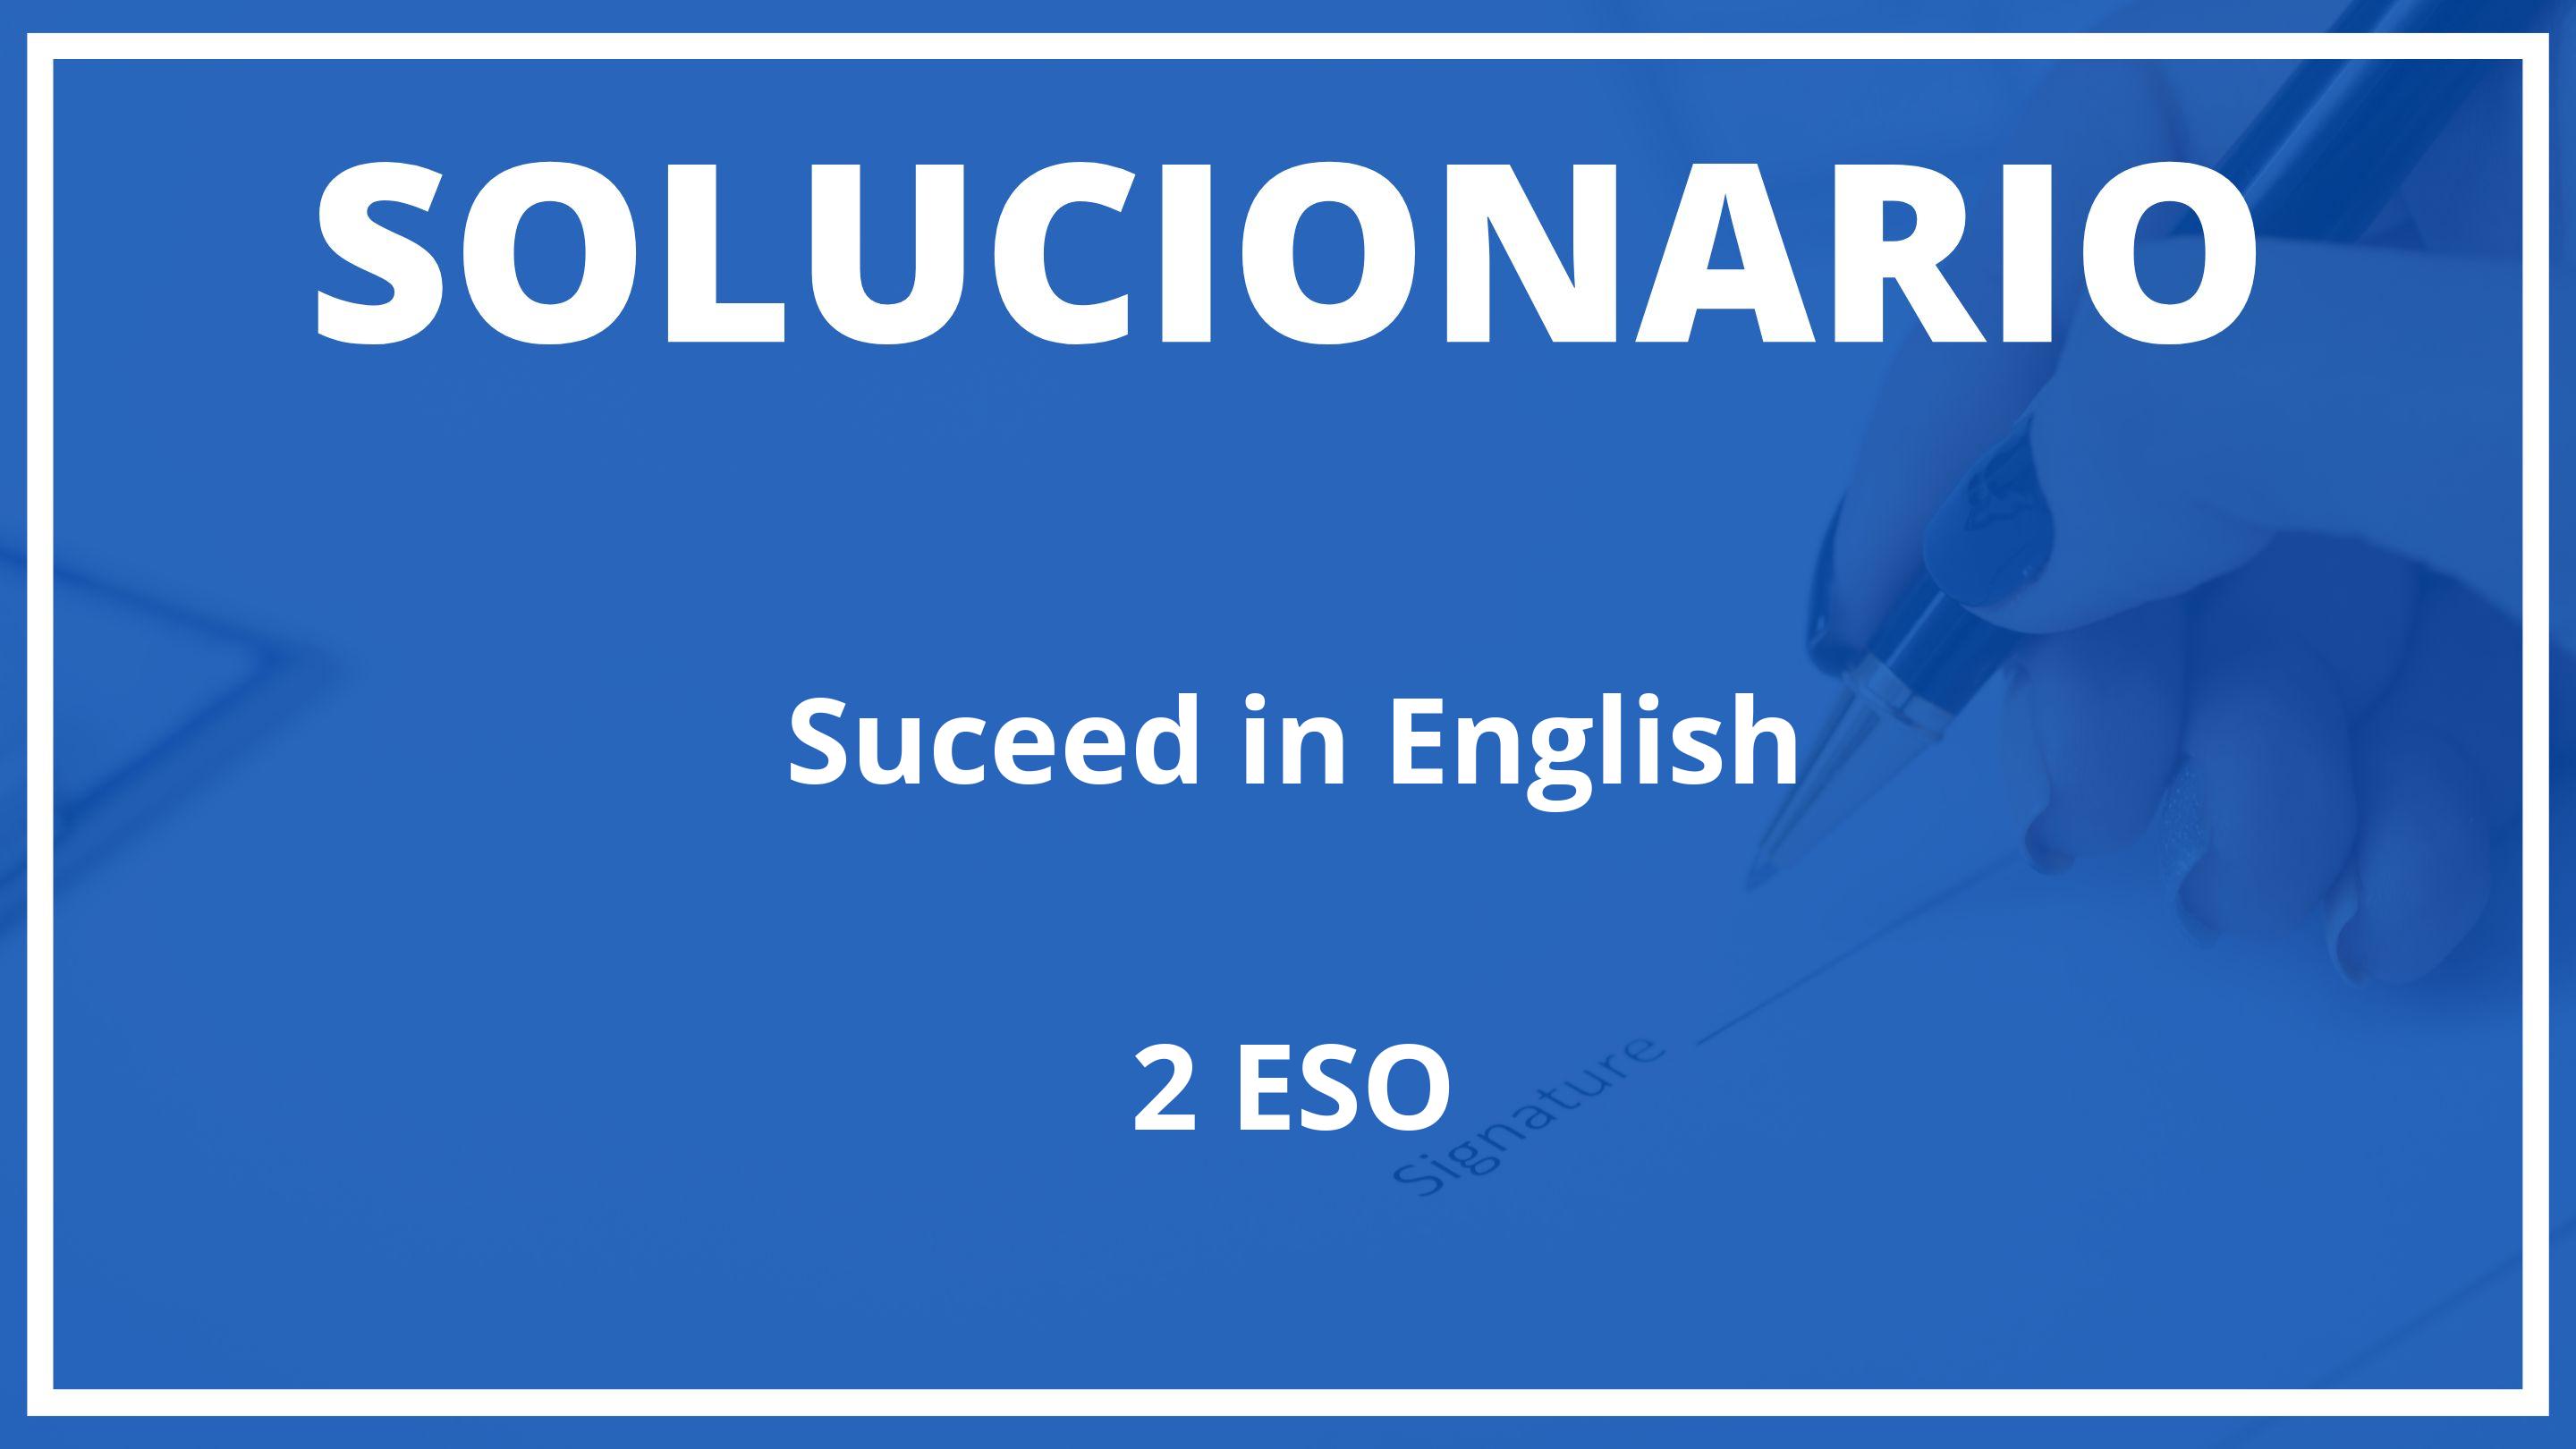 Solucionario Suceed in English  Oxford 2 ESO